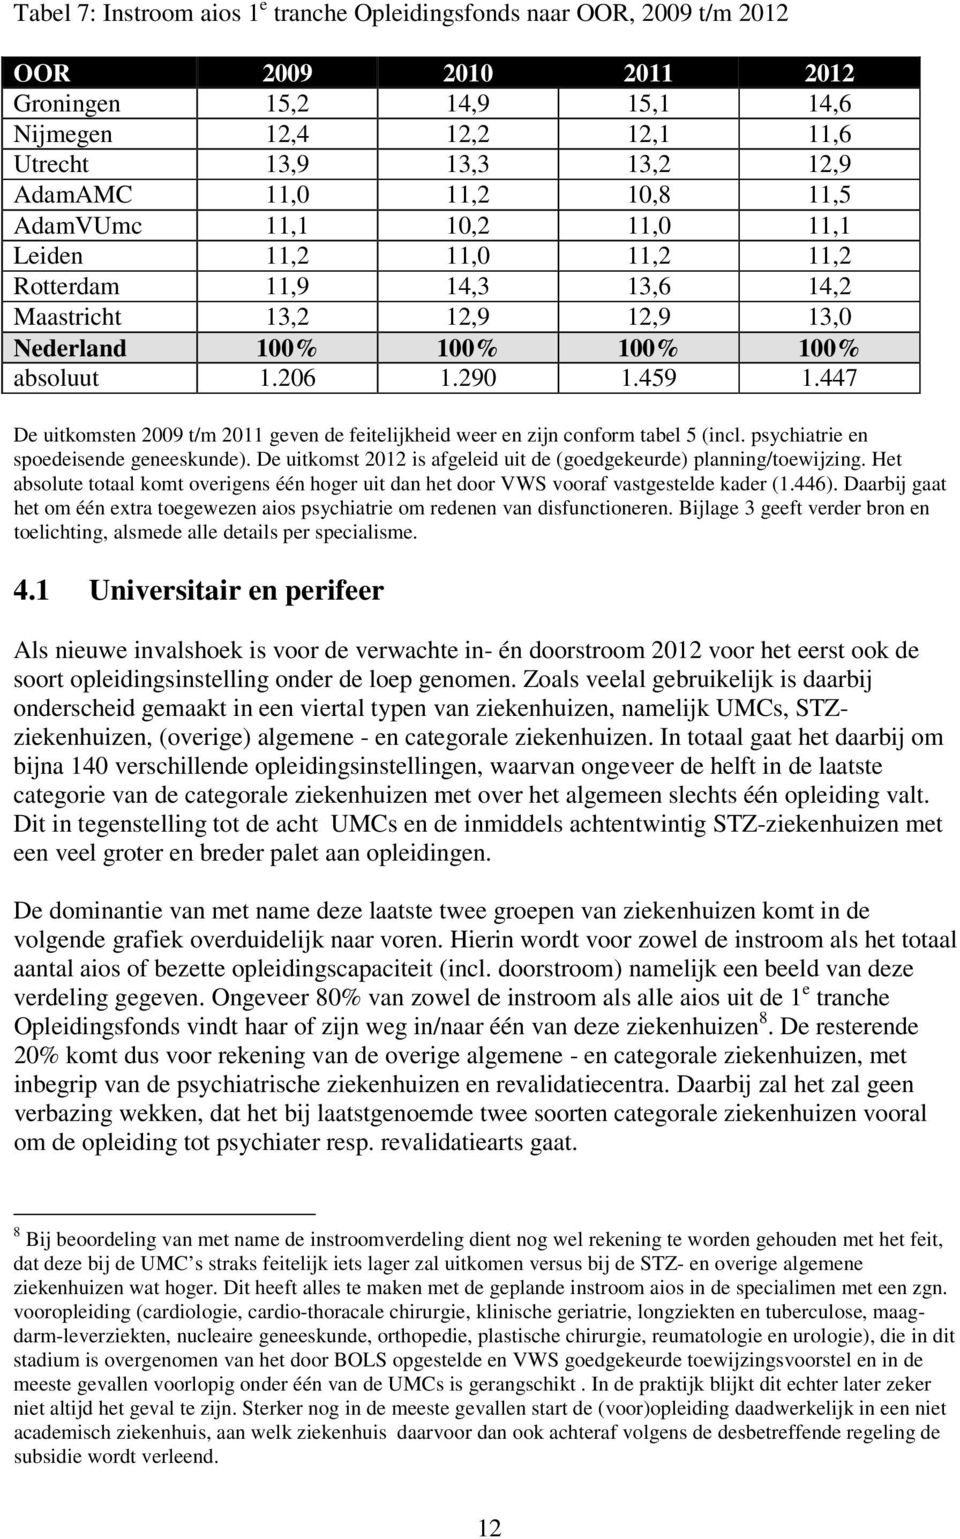 447 De uitkomsten 2009 t/m 2011 geven de feitelijkheid weer en zijn conform tabel 5 (incl. psychiatrie en spoedeisende geneeskunde).